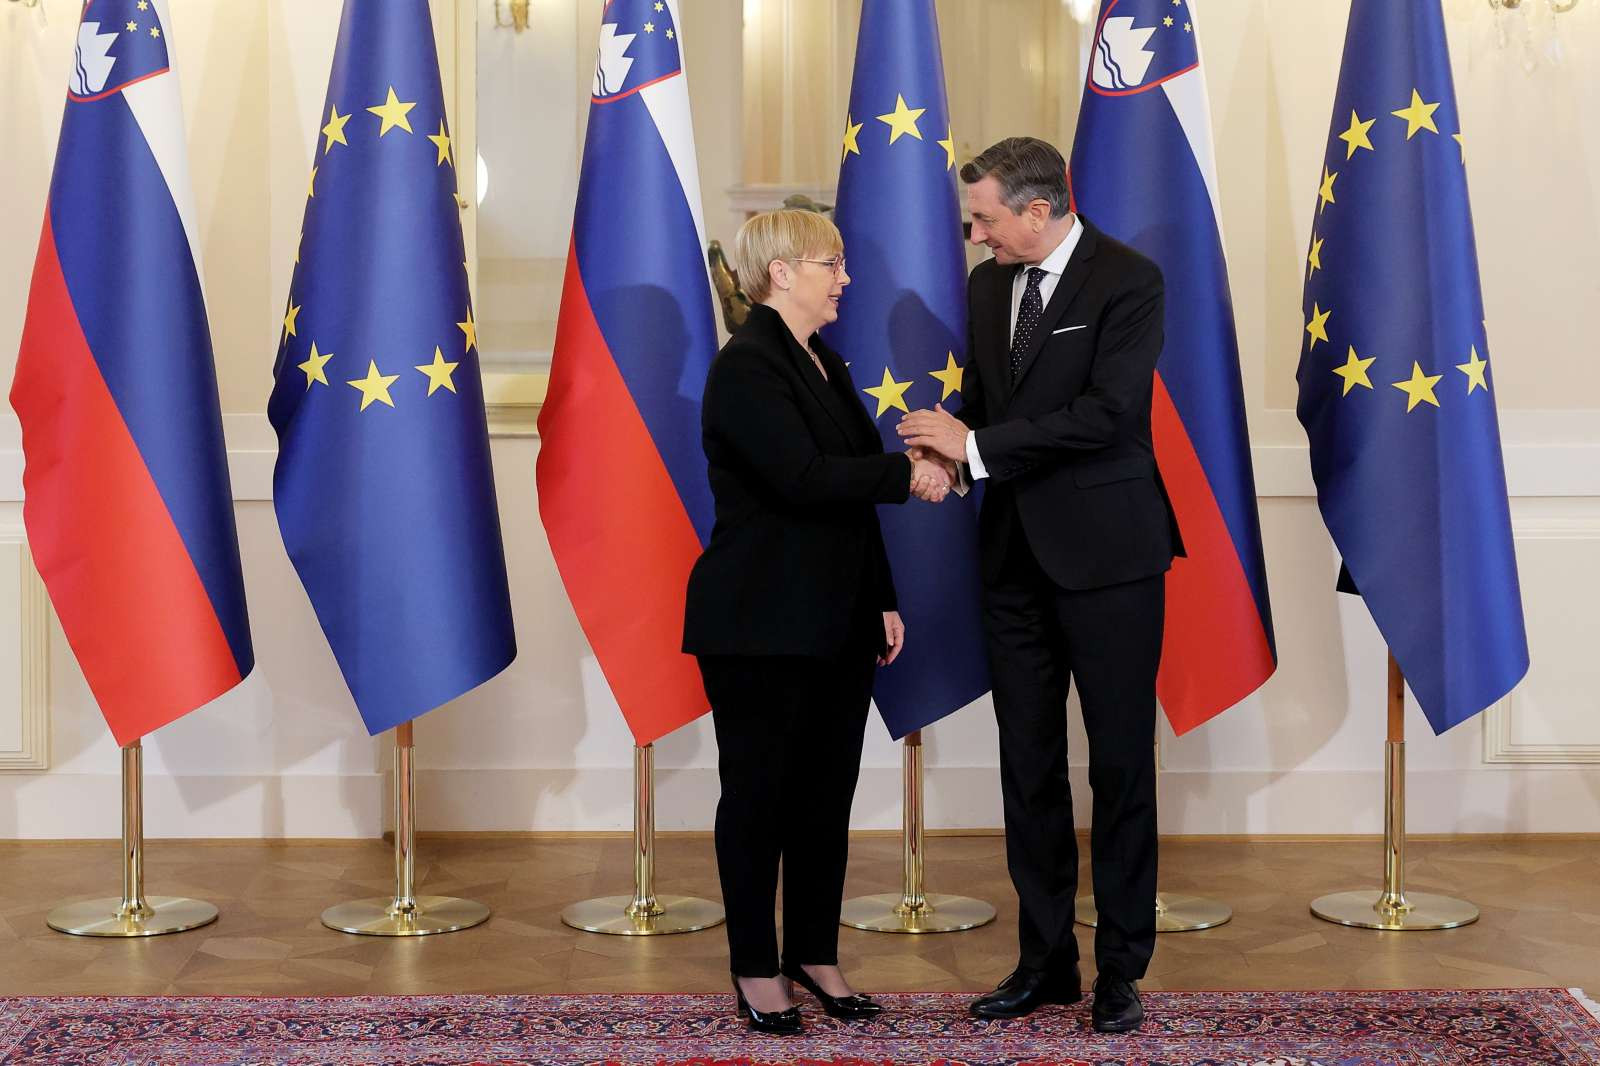 Predsednica republike Nataša Pirc Musar in nekdanji predsednik Borut Pahor.